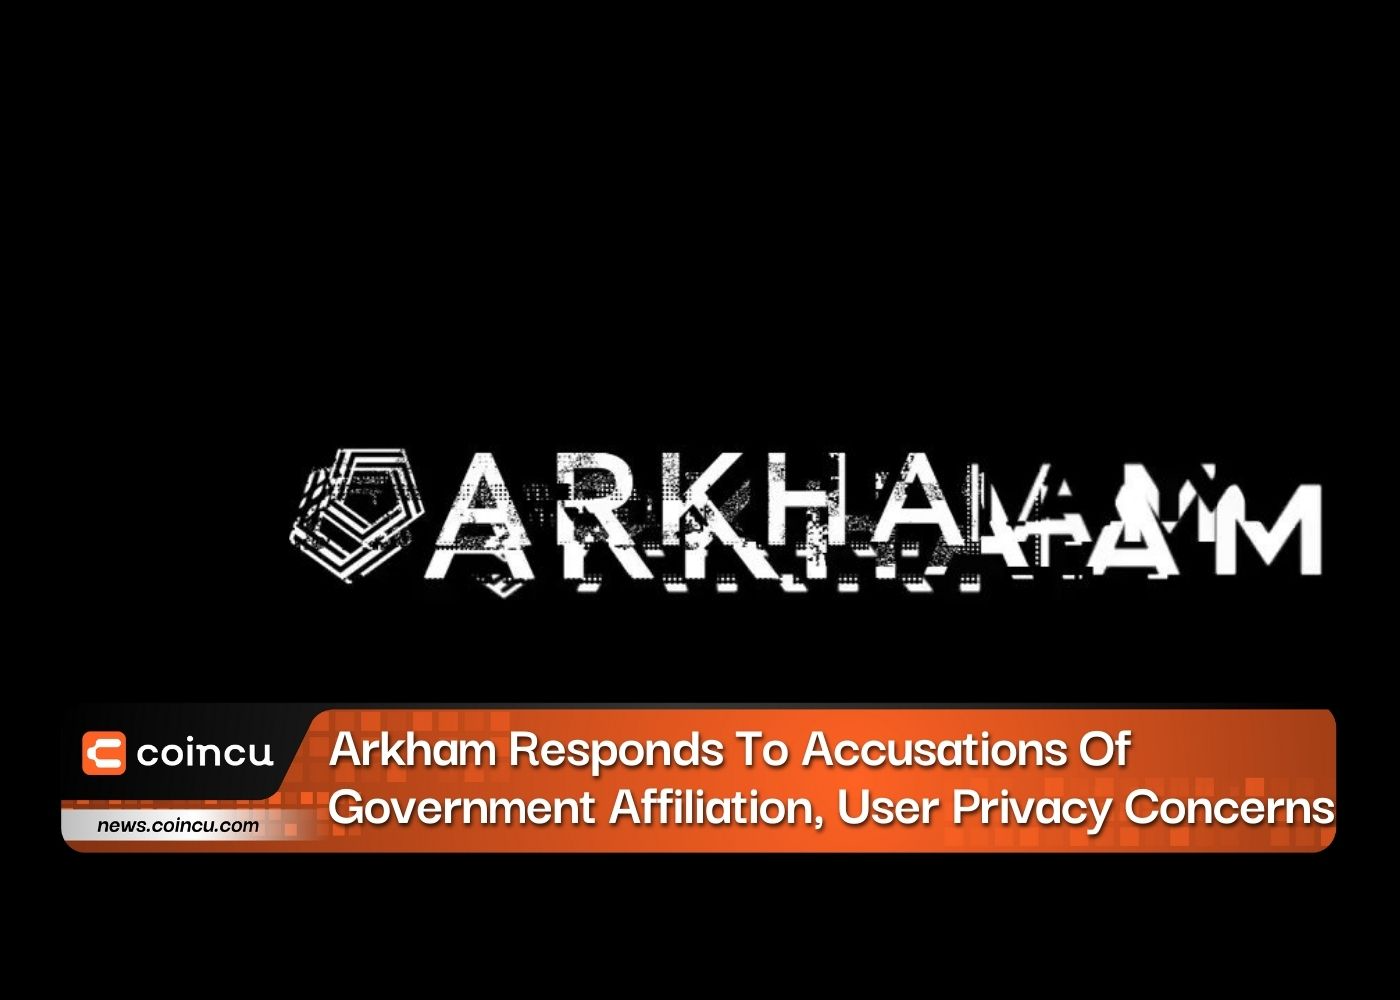 Arkham은 정부 제휴, 사용자 개인 정보 보호 문제에 대한 비난에 응답합니다.